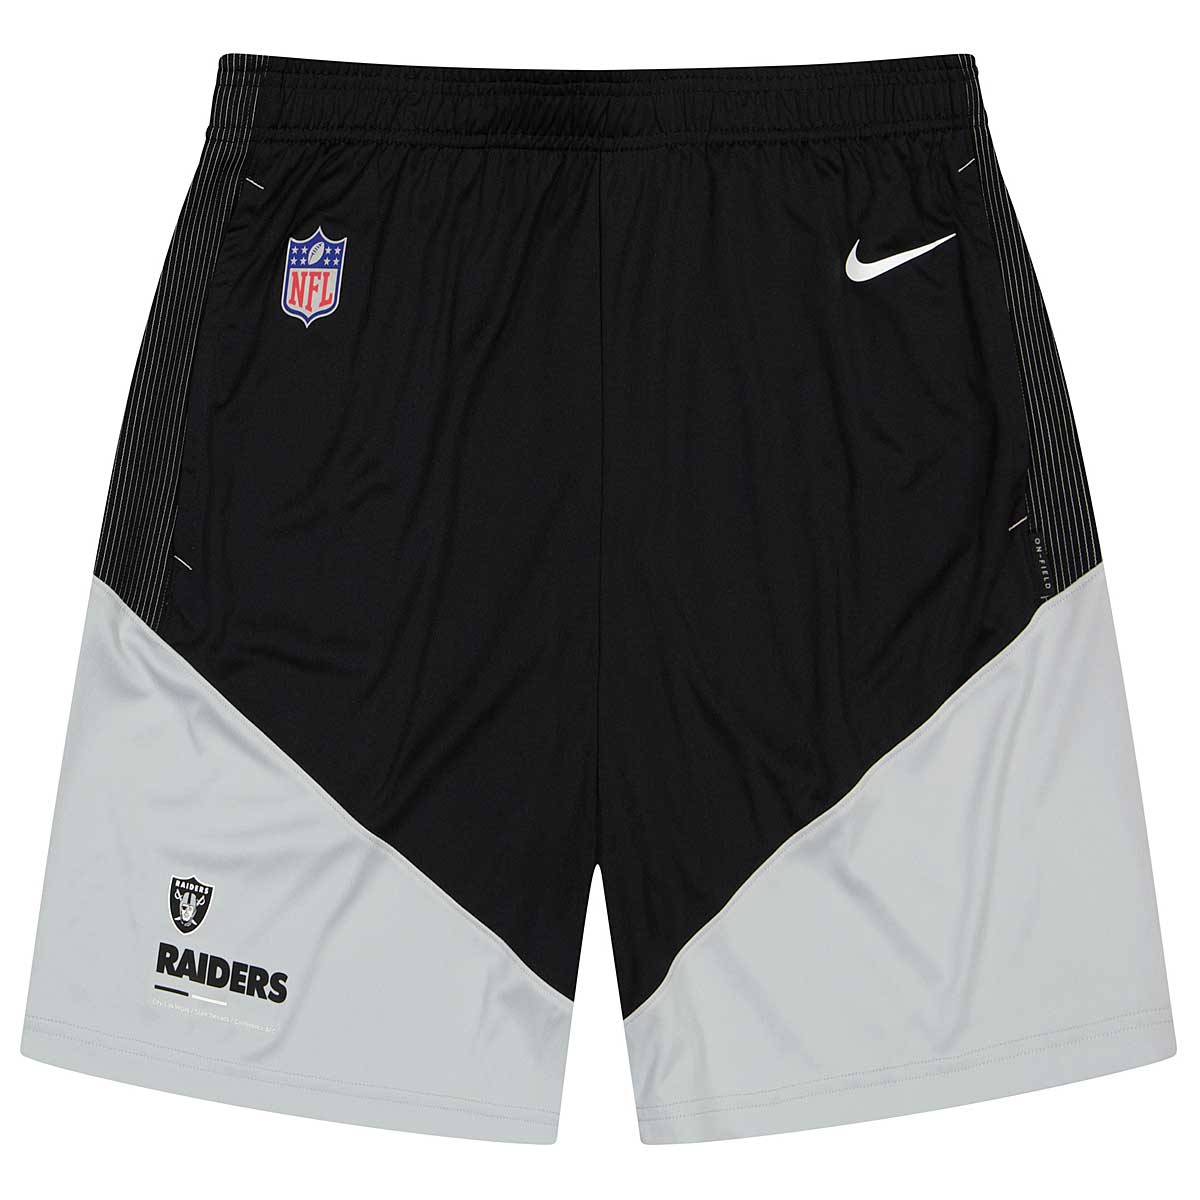 Nike Nfl Las Vegas Raiders Dri-Fit Knit Shorts, Black -Field Silver-Black Las Vegas Raiders